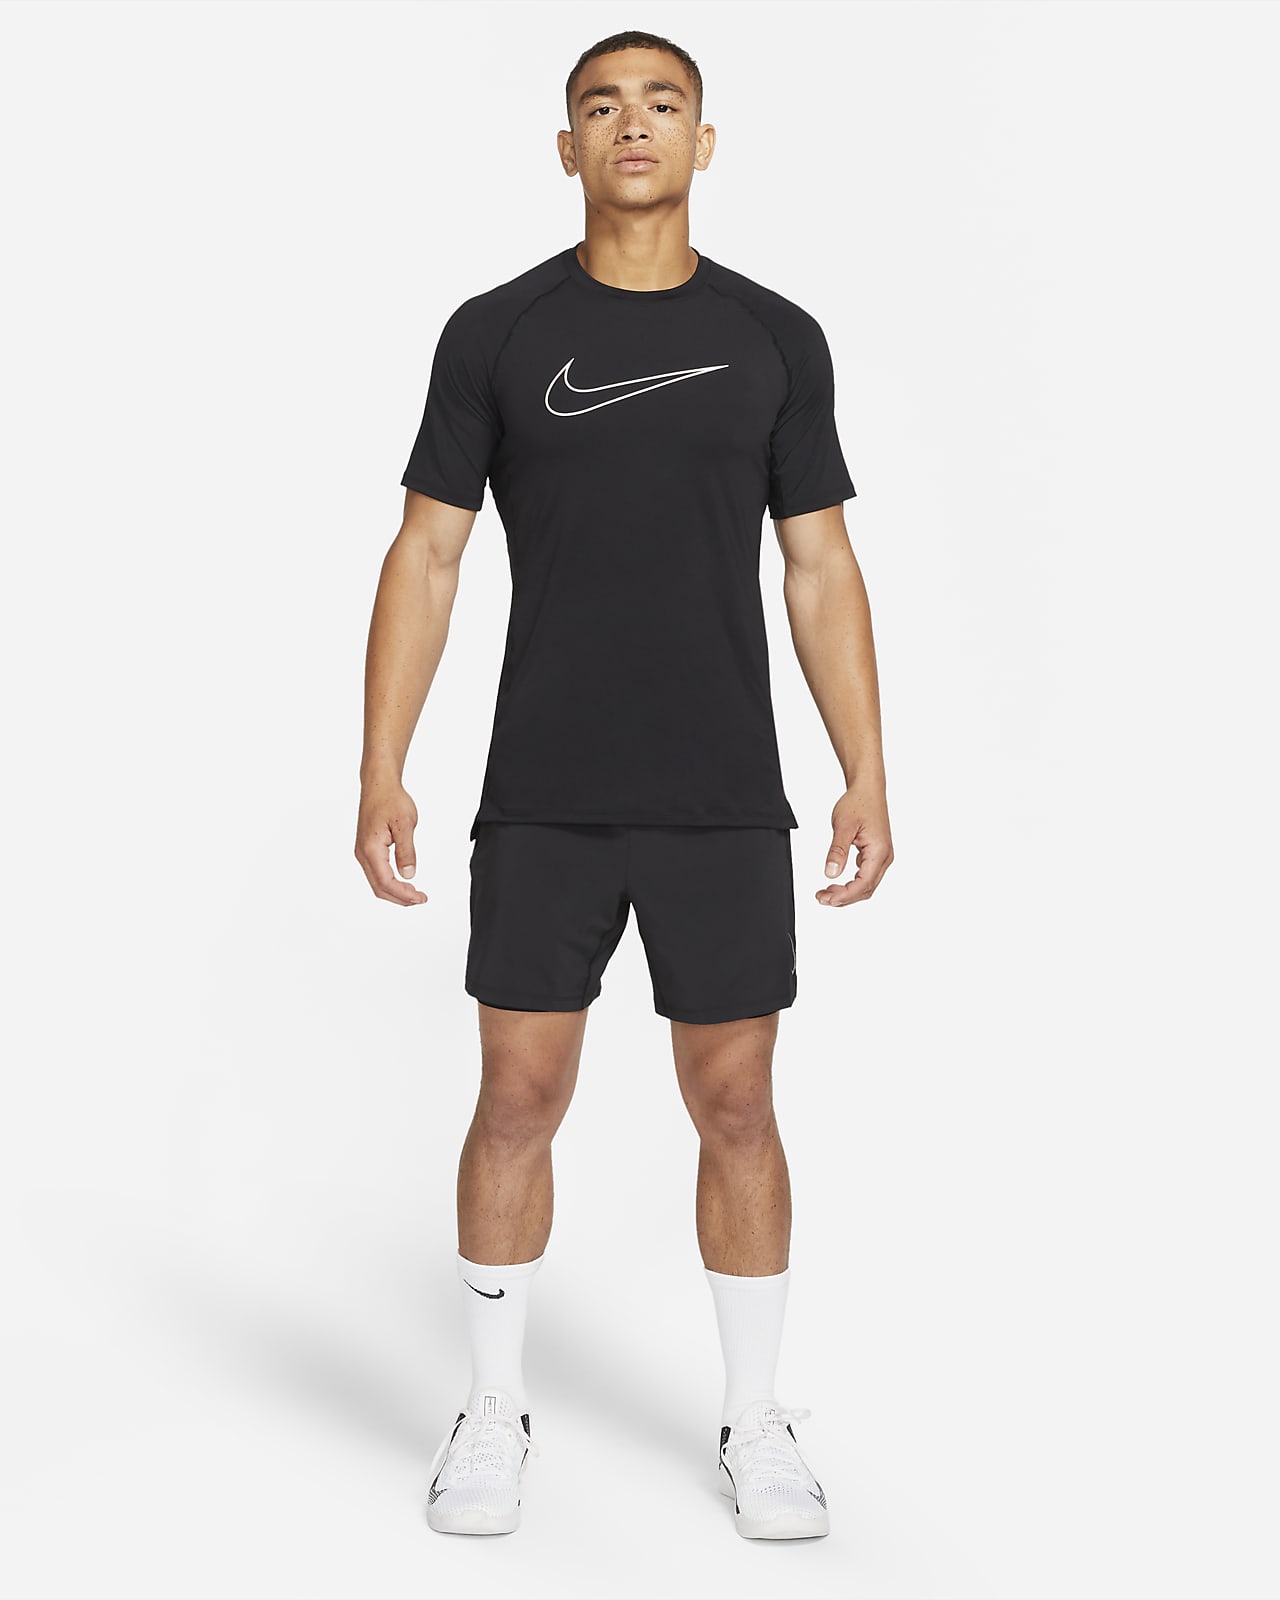 Débardeur Nike Pro Dri-Fit - Homme - Beach